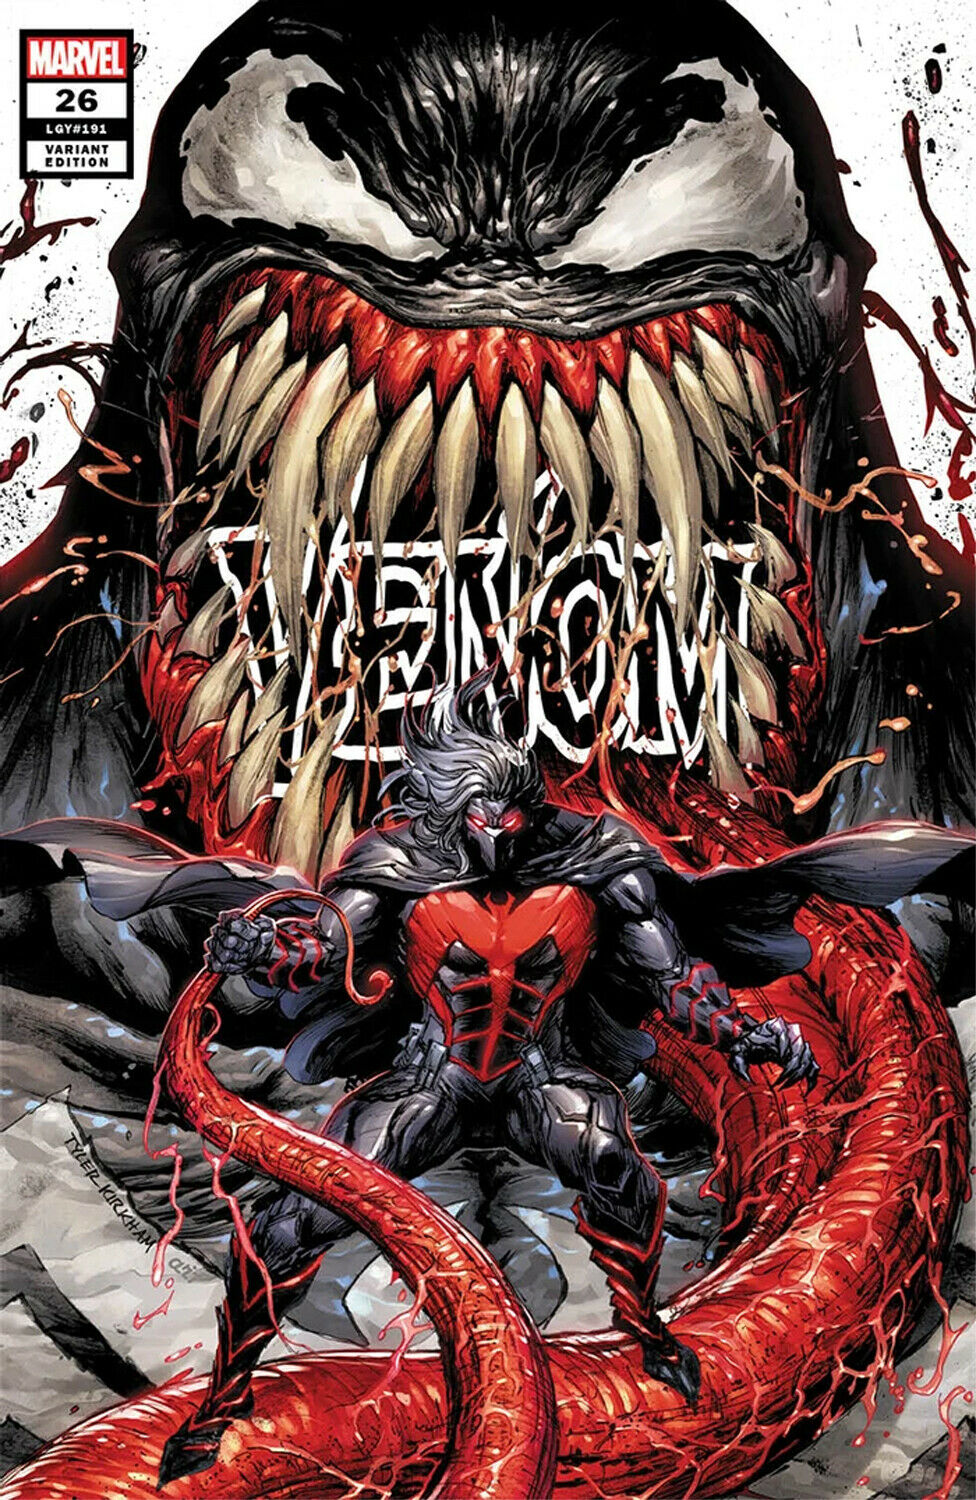 Venom #26 Trade Dress Cover D Variant by Tyler Kirkham 7.21.20